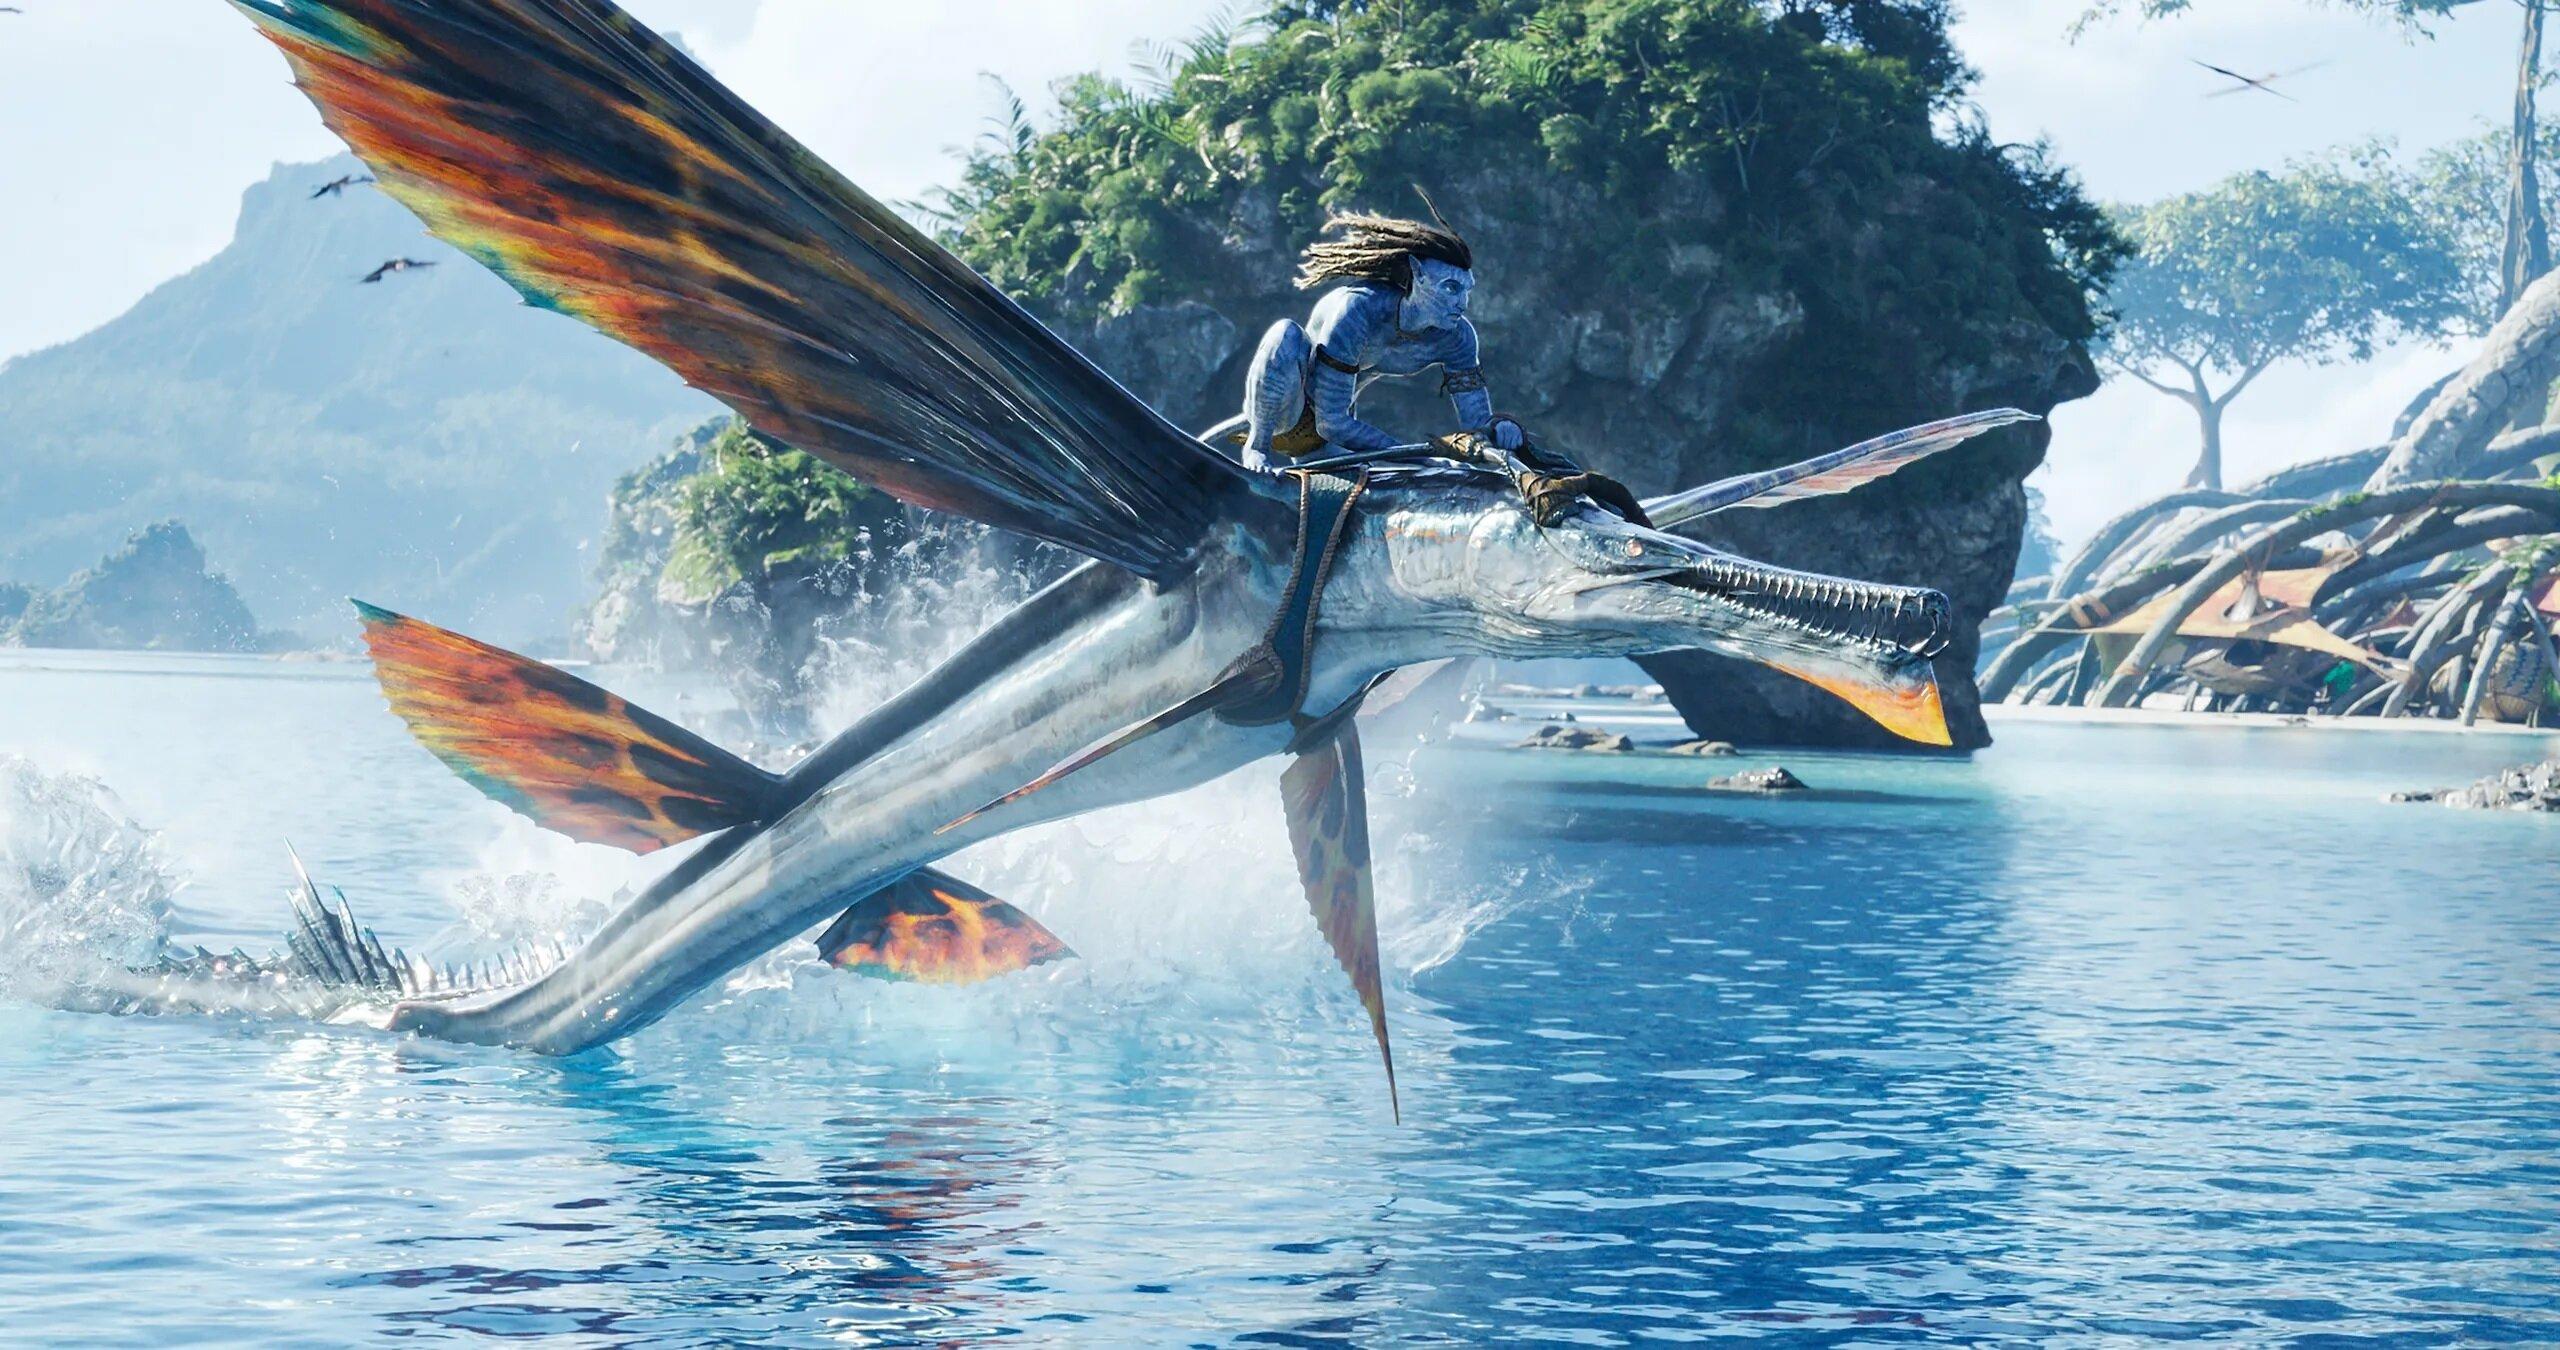 Avatar 2: The Way of Water là một tác phẩm tuyệt vời đầy kịch tính, chất lượng hình ảnh đỉnh cao, mang đến cho khán giả những trải nghiệm tuyệt vời và kịch tính không tưởng. Hãy đến và tham gia vào cuộc phiêu lưu khám phá thế giới Pandora bạn nhé!